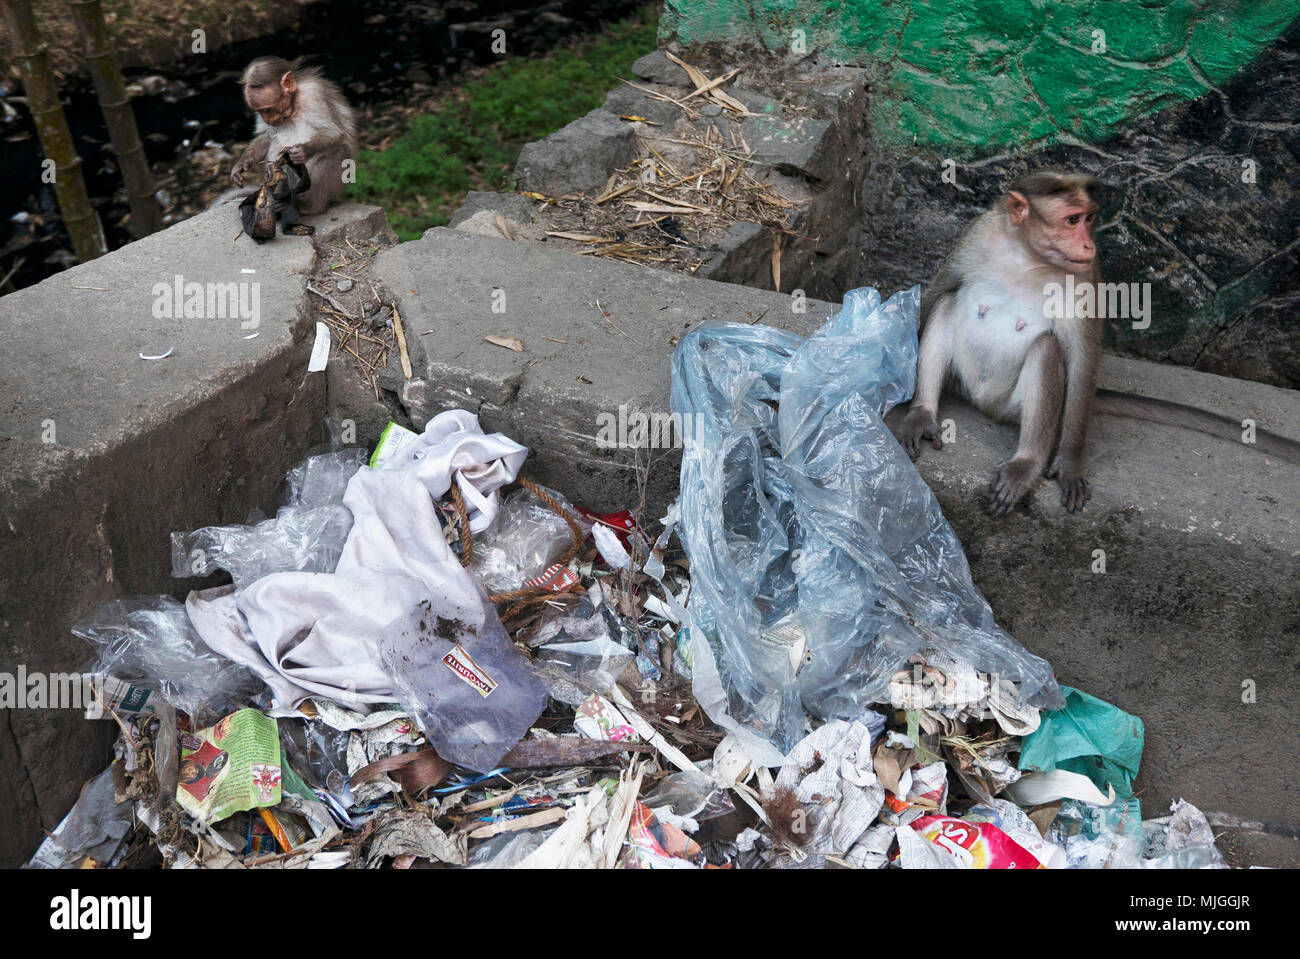 La mayoría properous estado de Kerala en la India, todavía tiene basura problema explotado por monos!!! Foto de stock